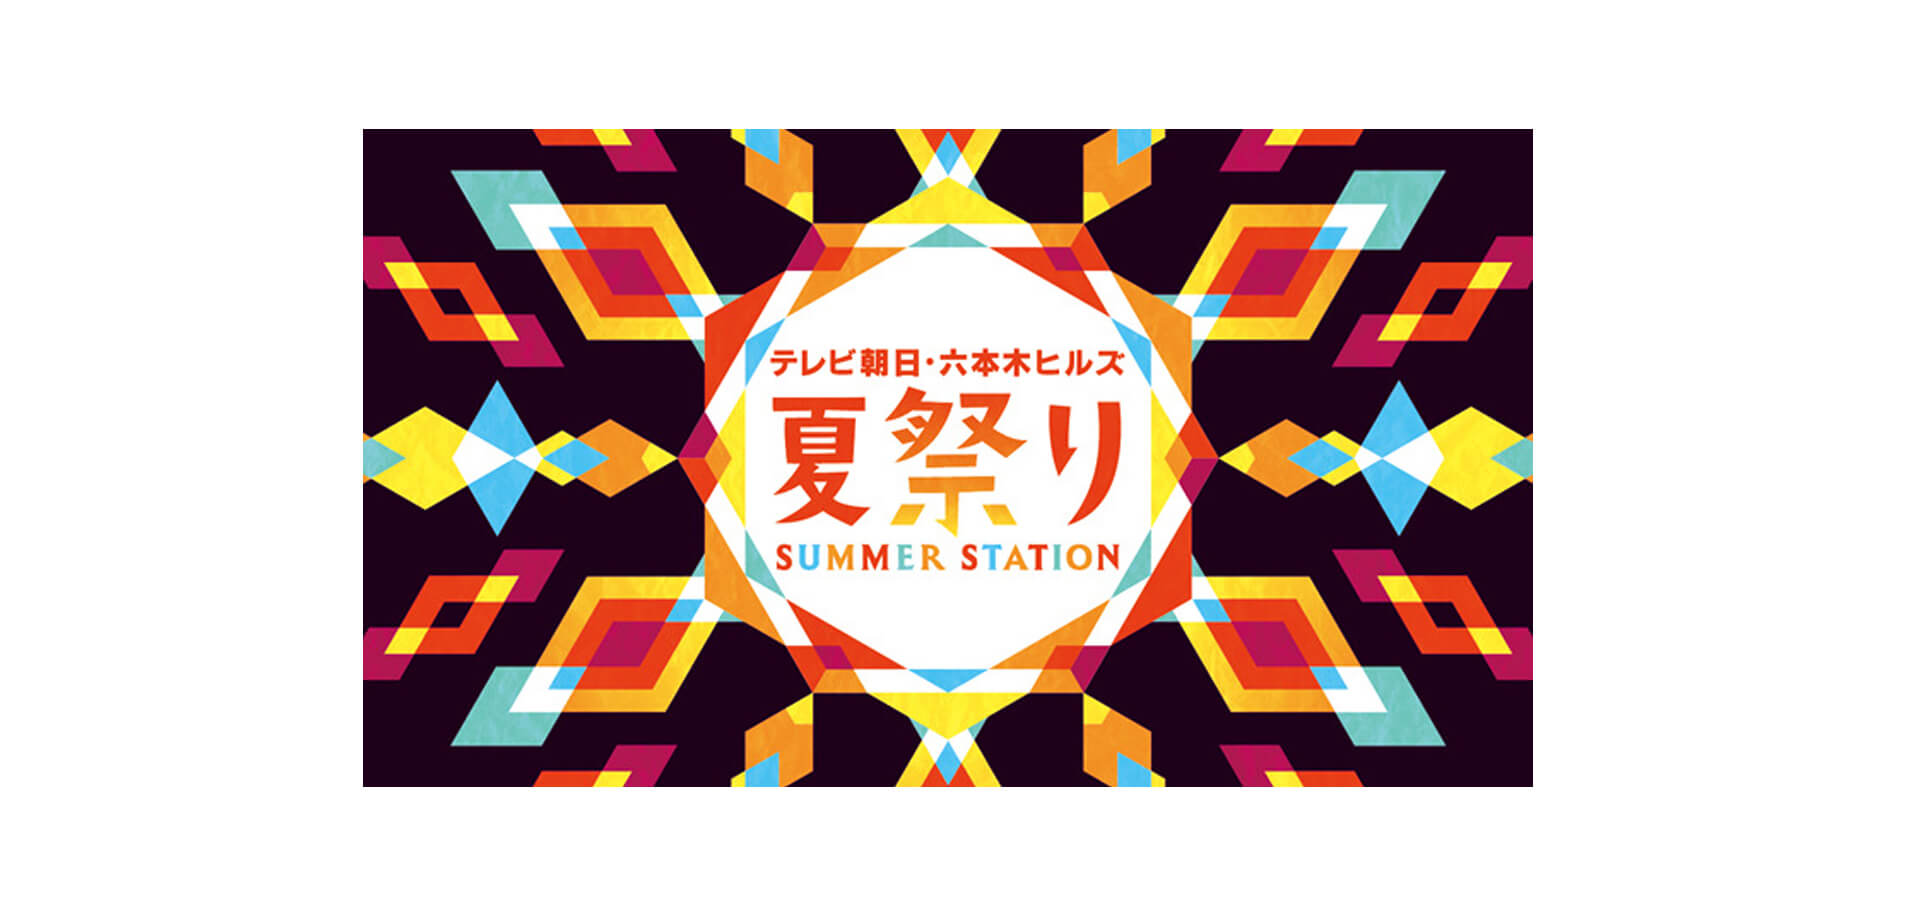 テレビ朝日・六本木ヒルズ 夏祭り SUMMER STATION バナー